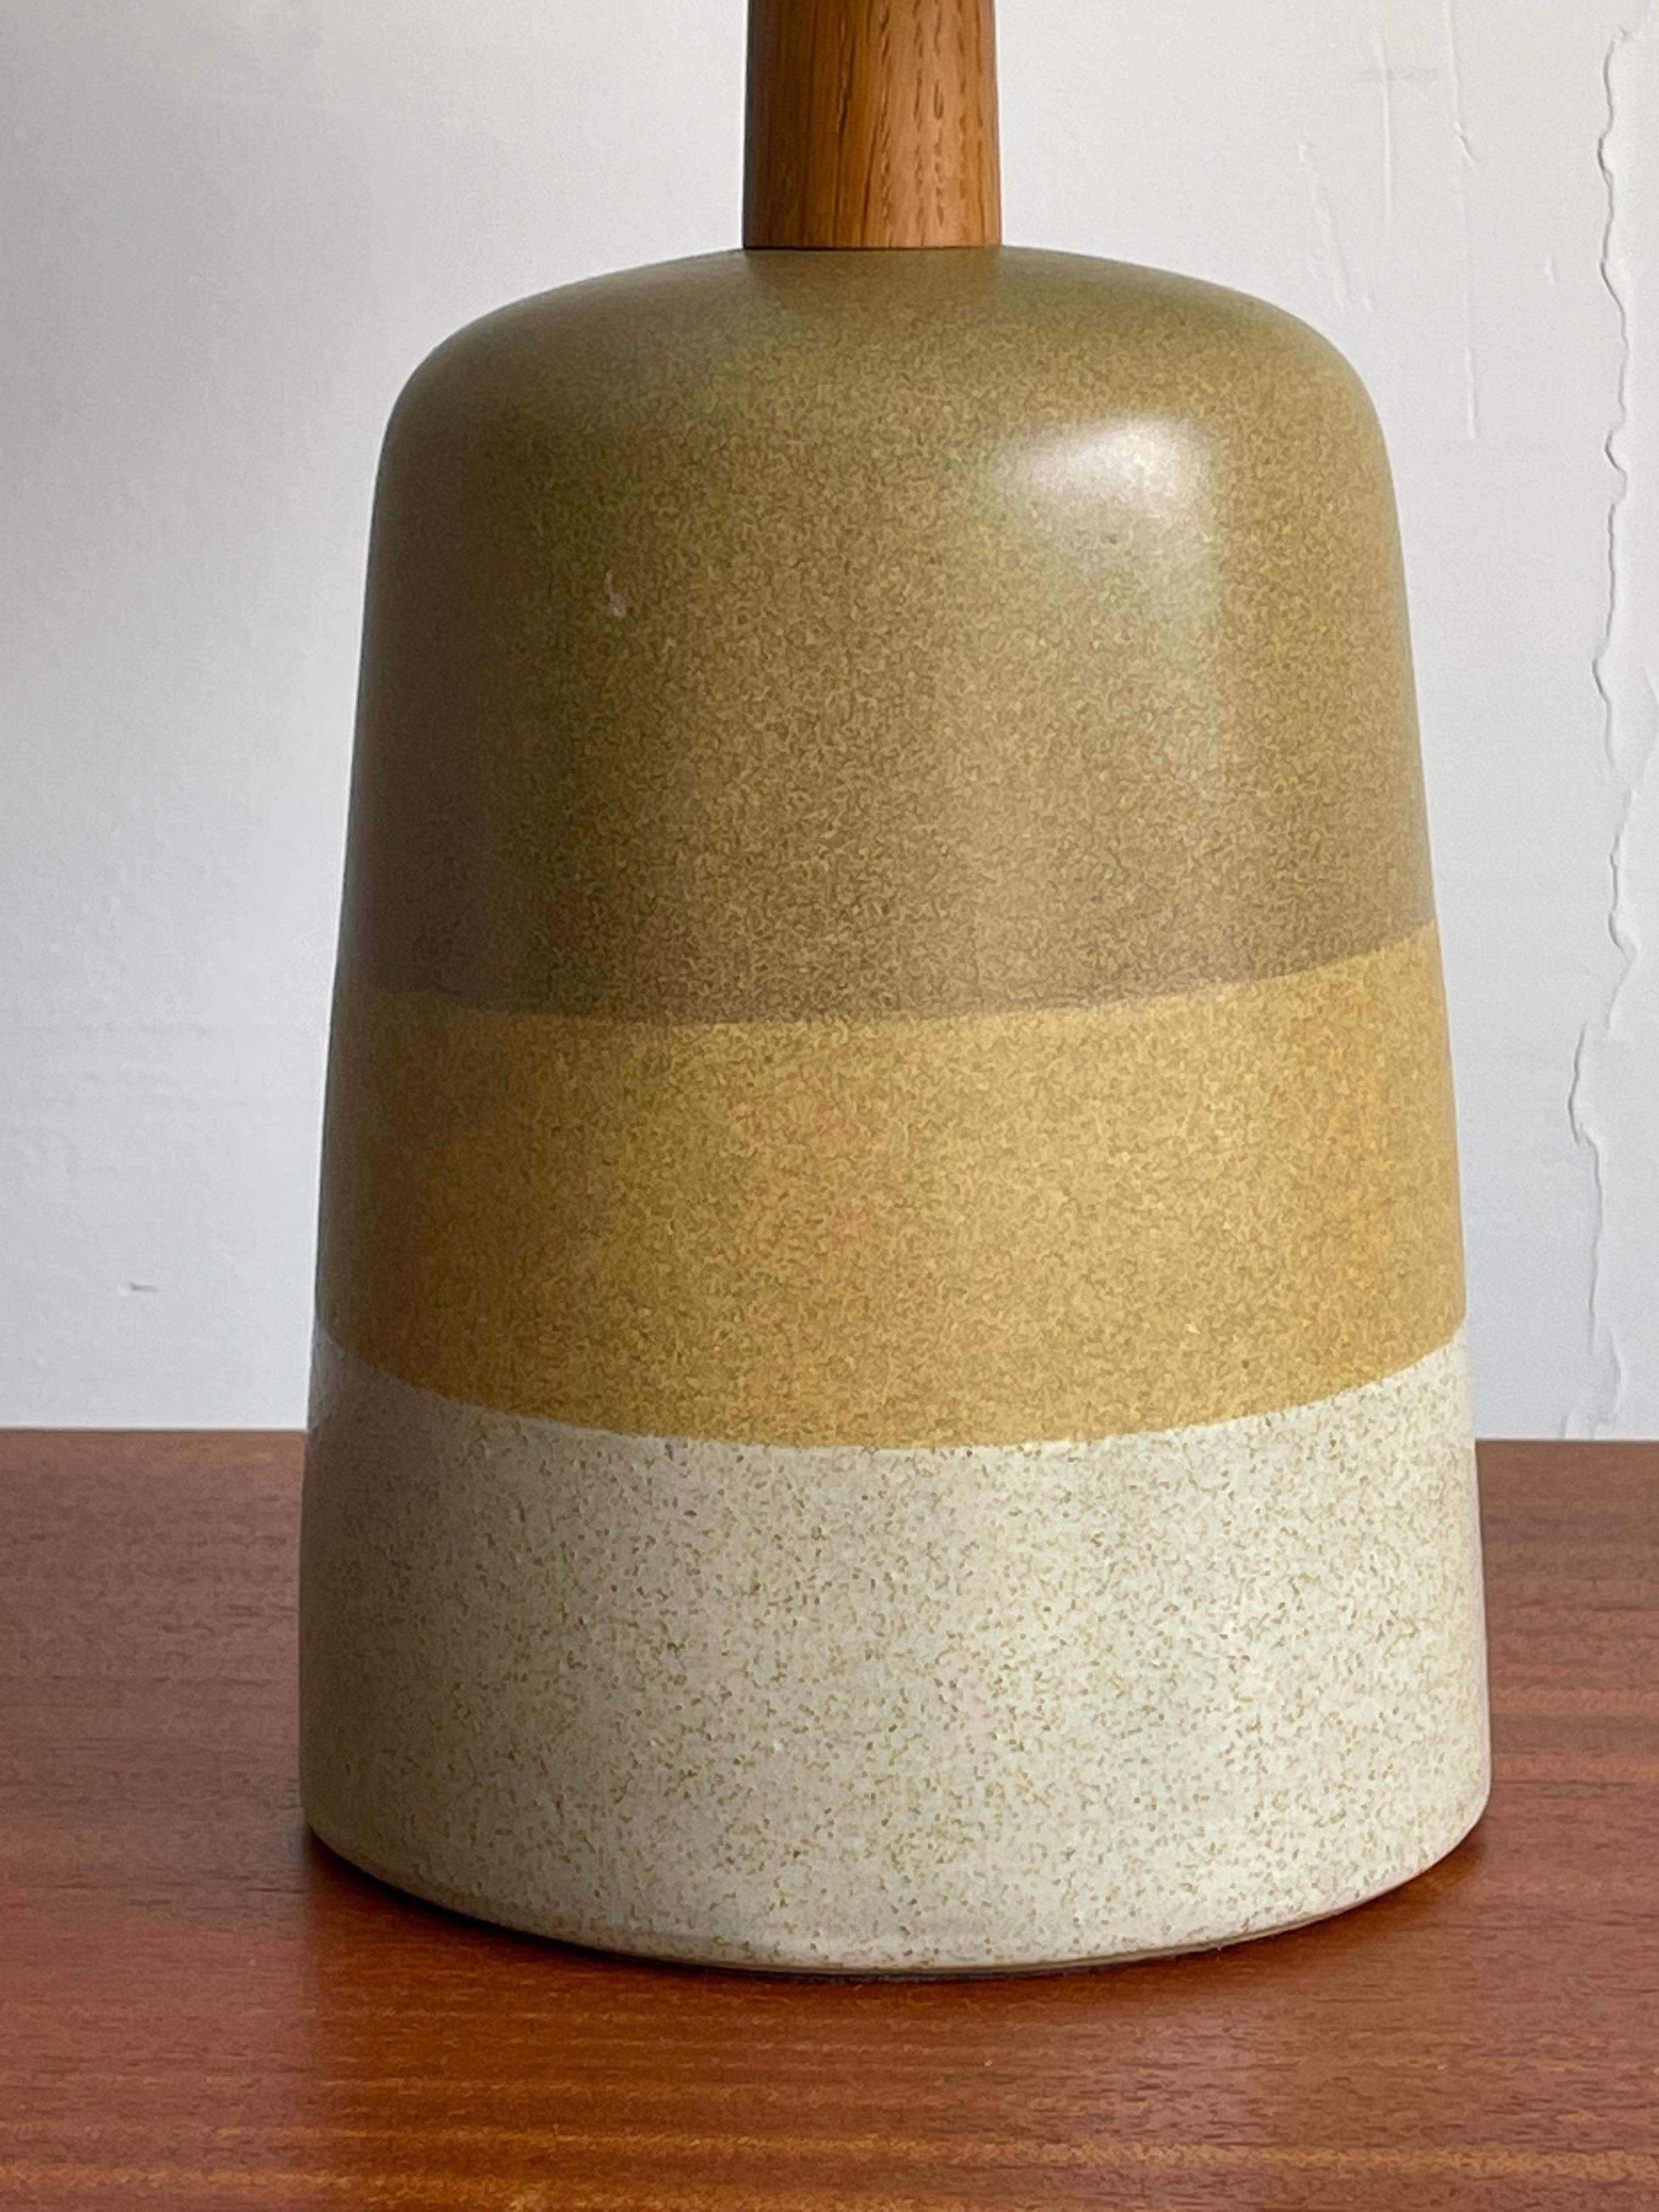 Lampe de table inhabituelle de Martz conçue par Jane et Gordon Martz pour les Studios Marshall. Merveilleuse palette de couleurs et forme.

Dimensions 
En général
20.hauteur de 25 pouces
13